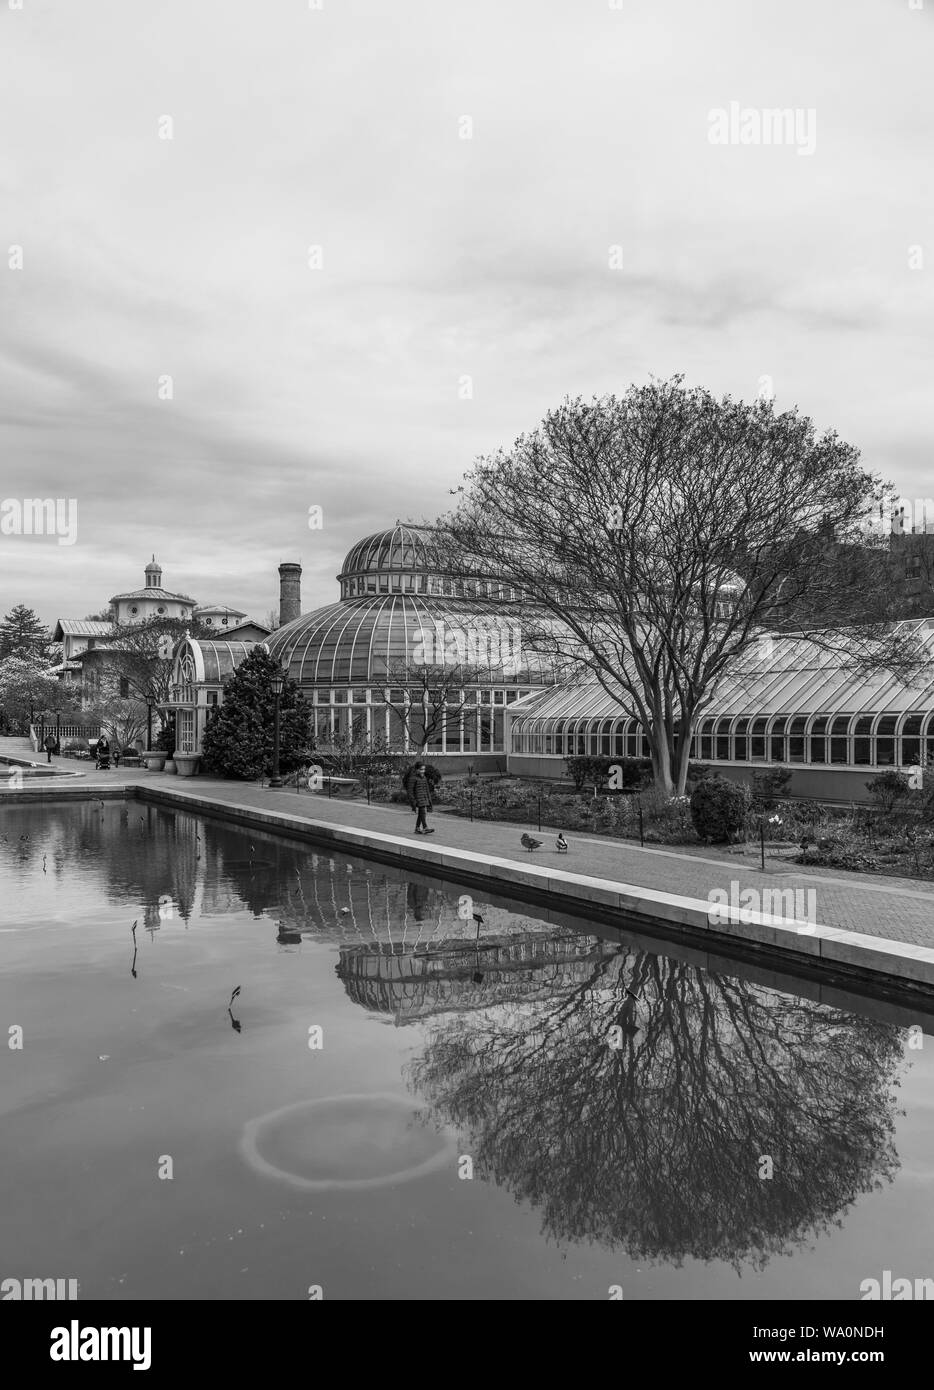 Una fotografía en blanco y negro del Brooklyn Botanic Garden. Foto de stock